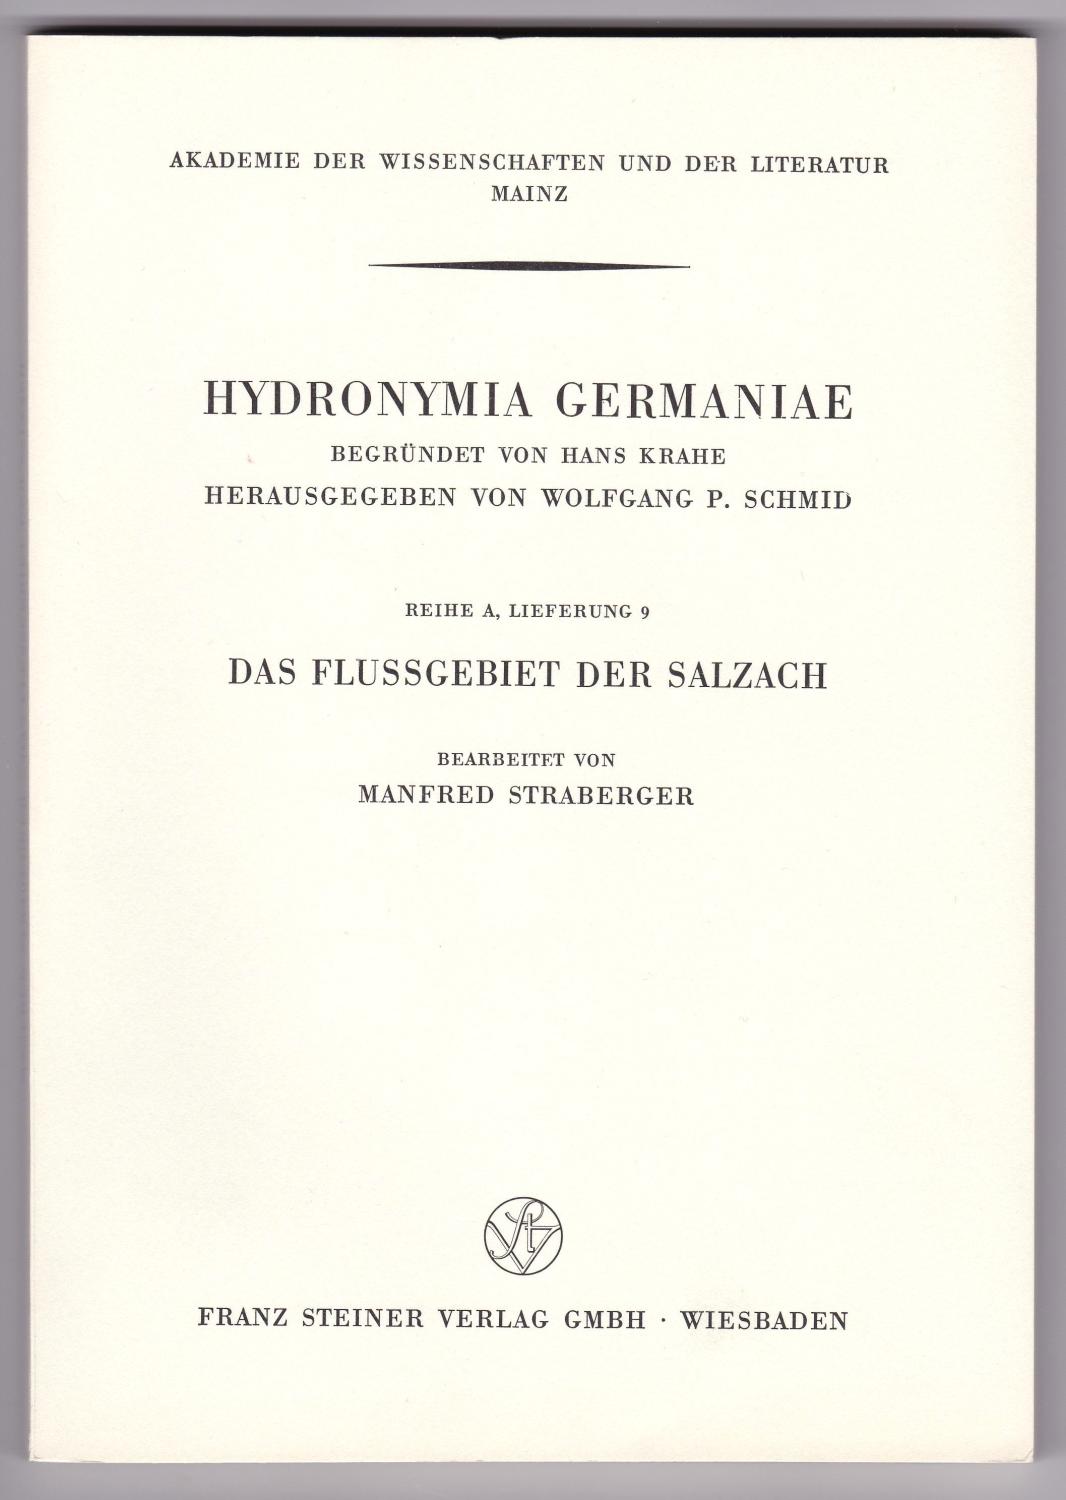 Das Flußgebiet der Salzach [Hydronymia Germaniae Reihe A Lieferung 9] - Straberger, Manfred